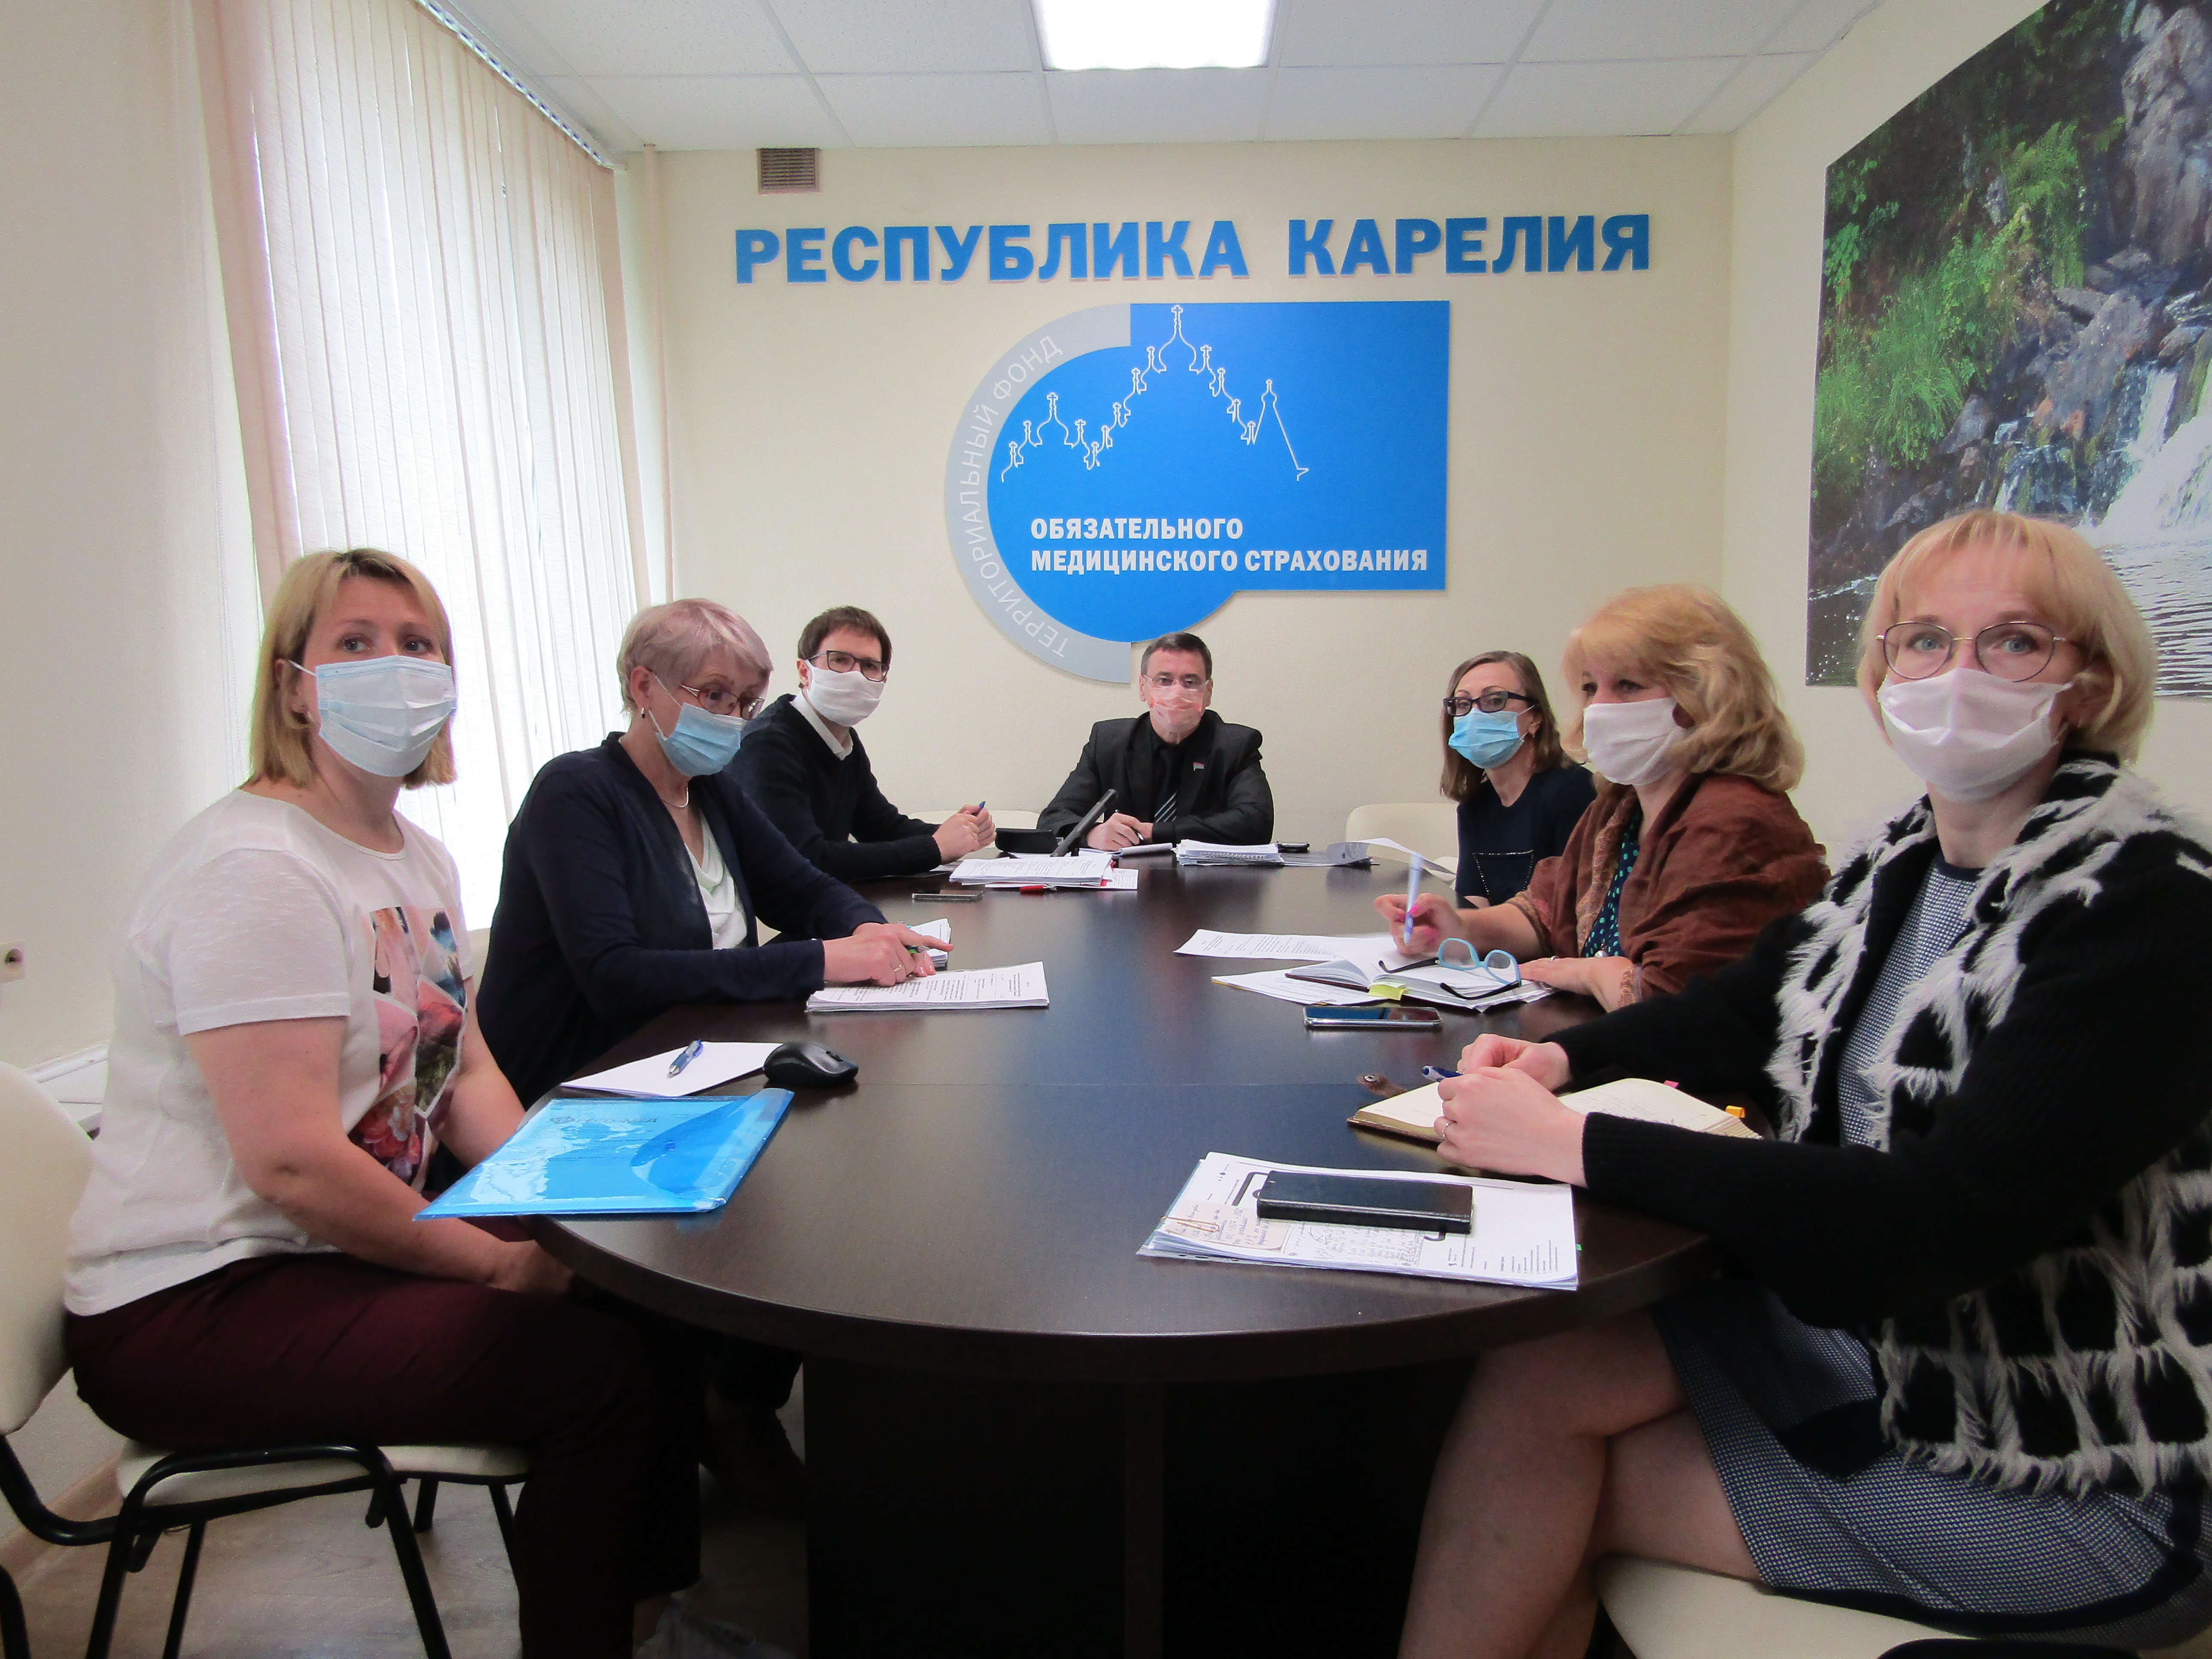 04 июня 2020 года состоялось видеоселекторное  совещание Председателя  ФФОМС  Е.Е. Черняковой с руководителями ТФОМС. 